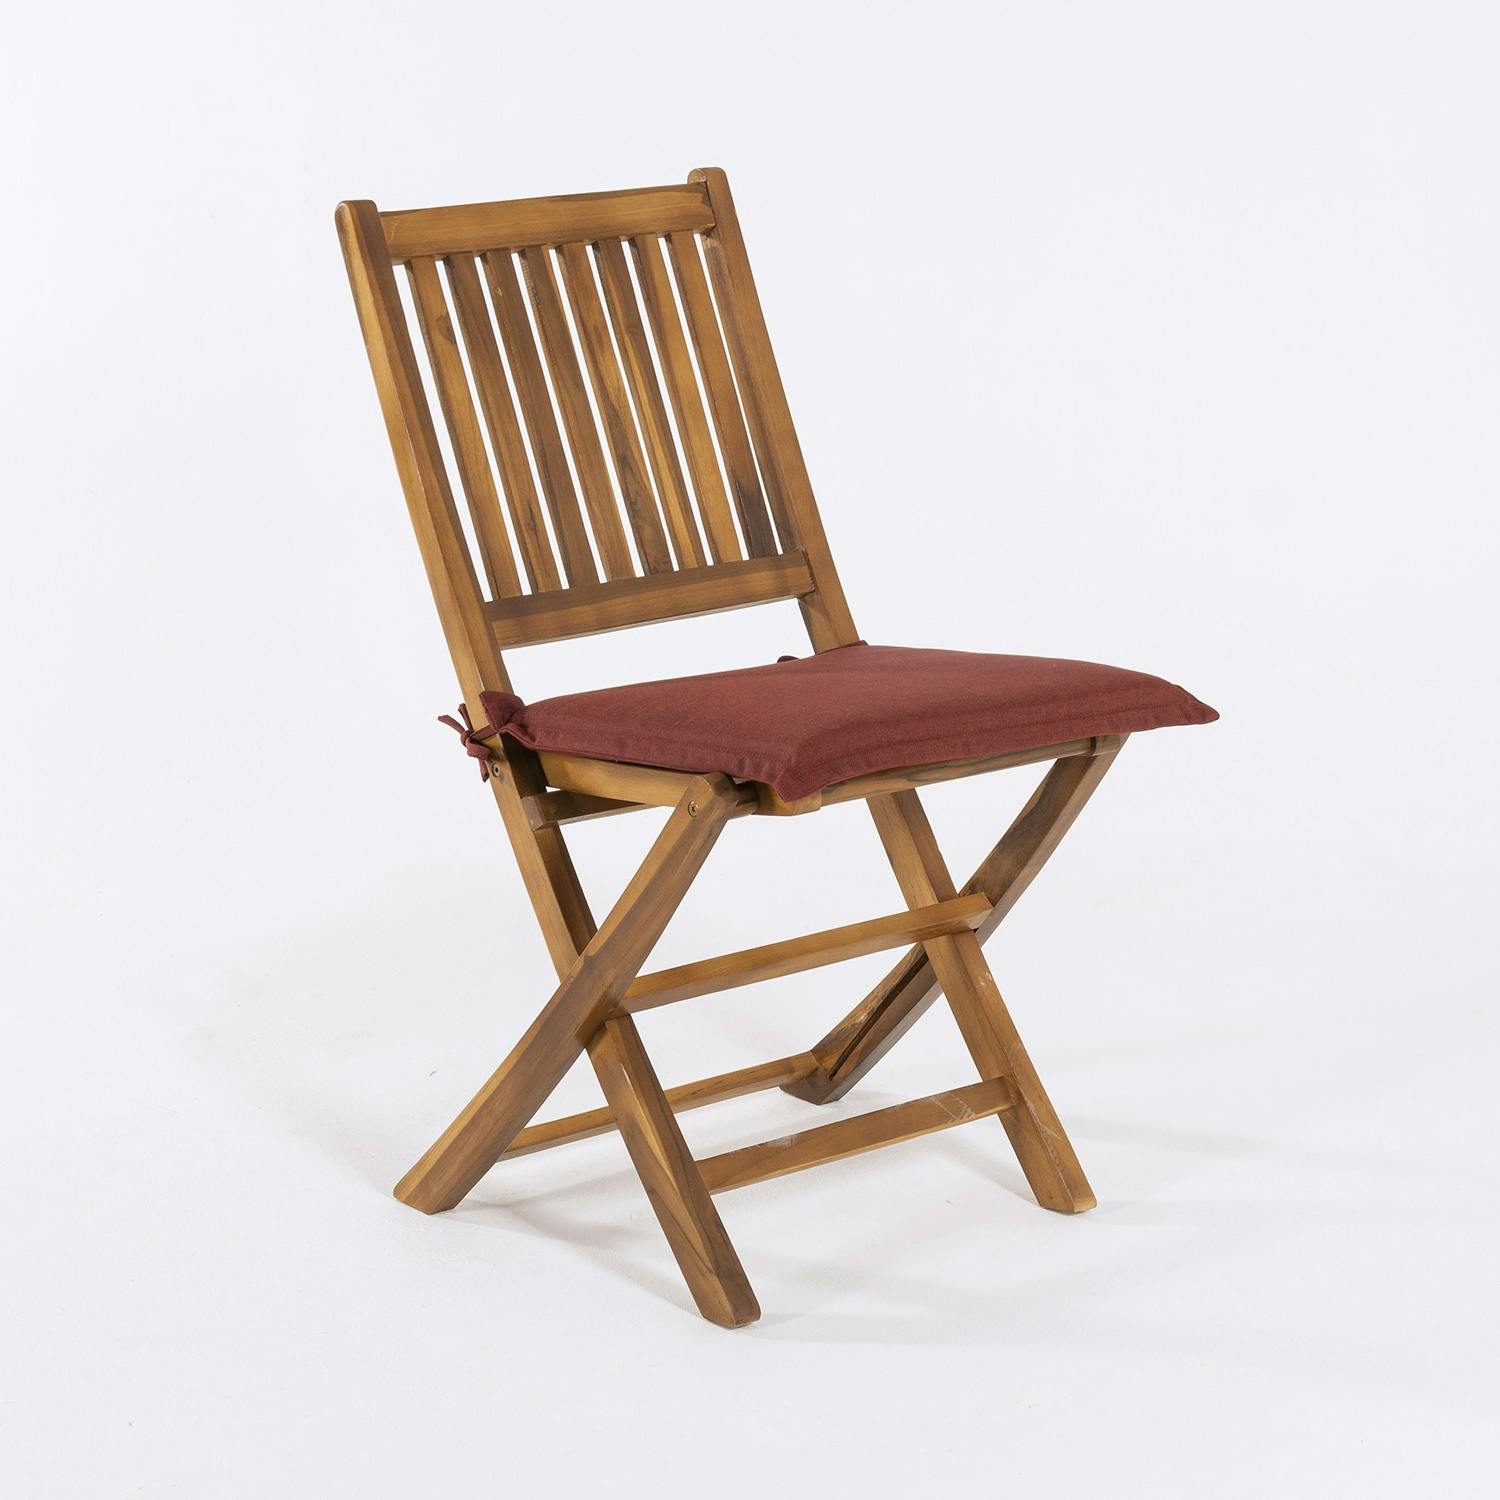 Pack 6 cojines para sillas de jardín naranja 44x44x5 cm